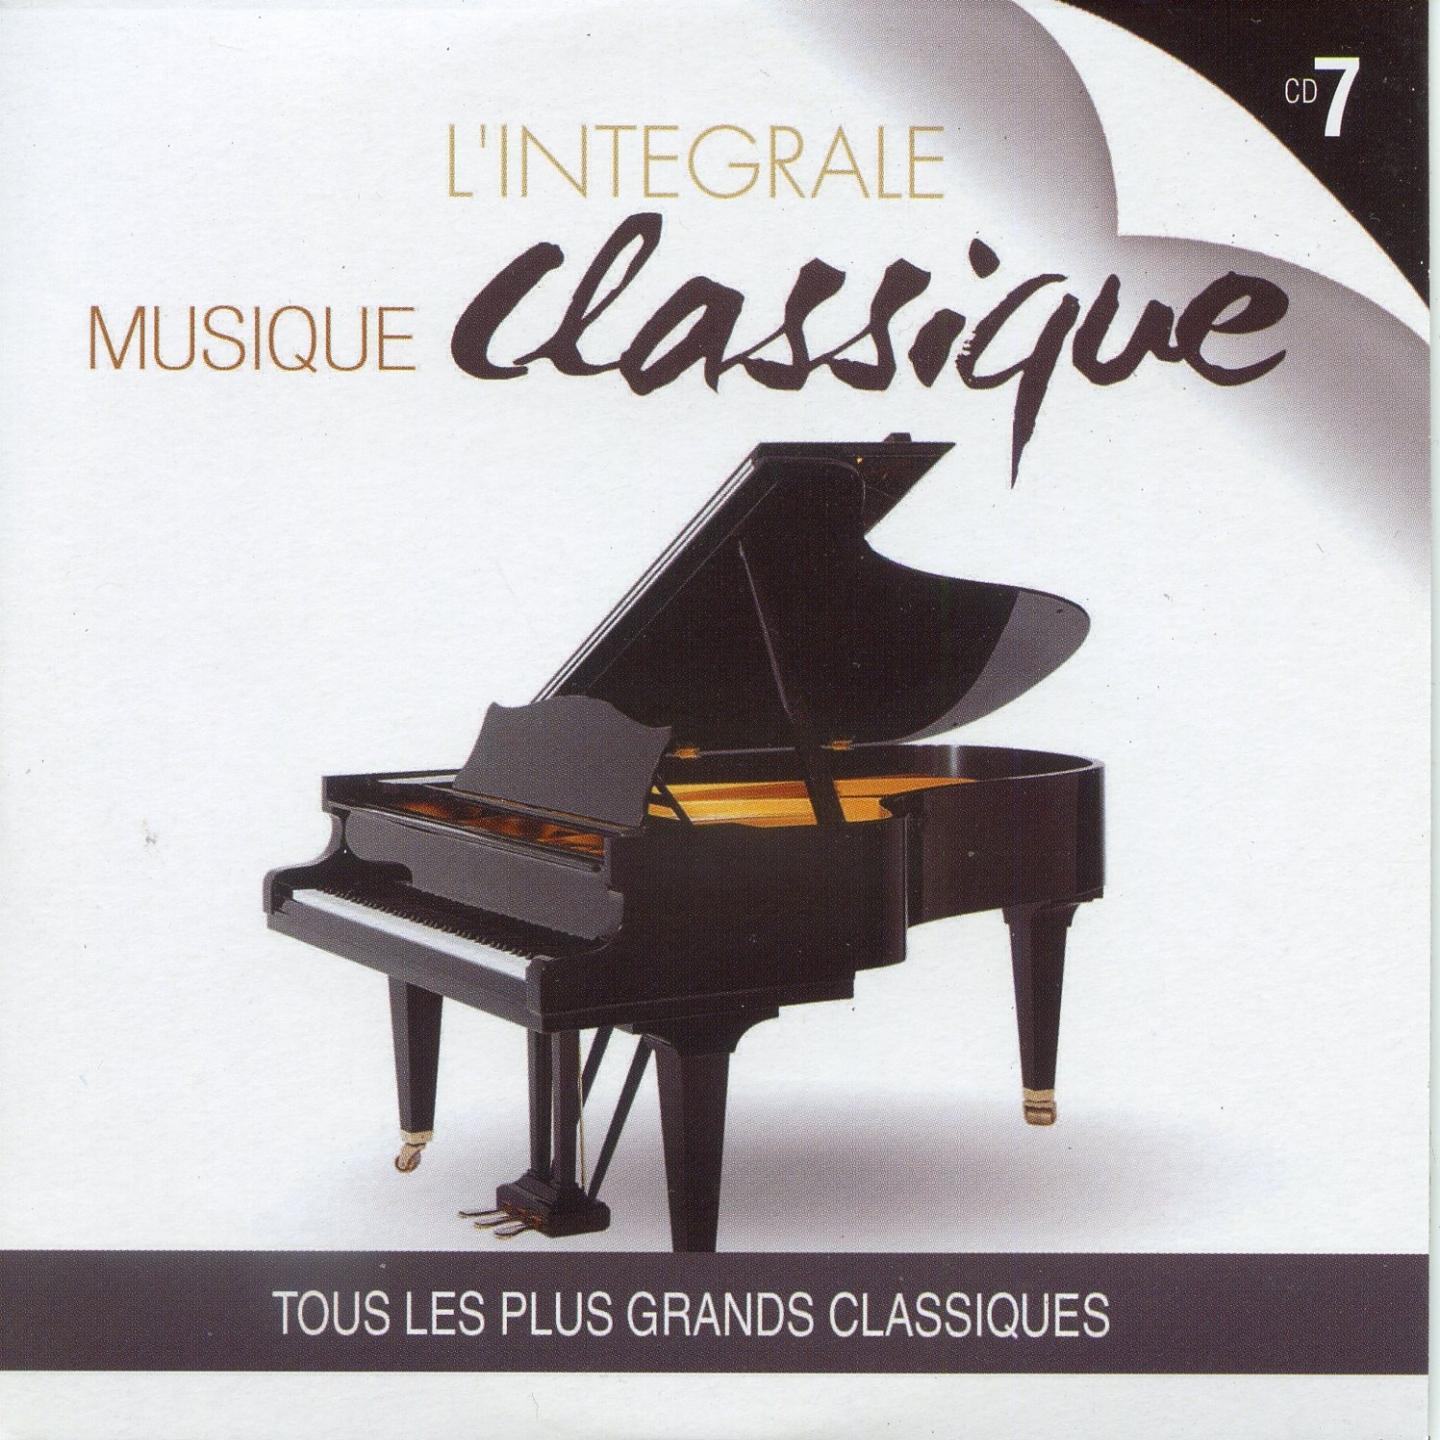 L' inte grale musique classique, vol. 7 Tous les plus grands classiques